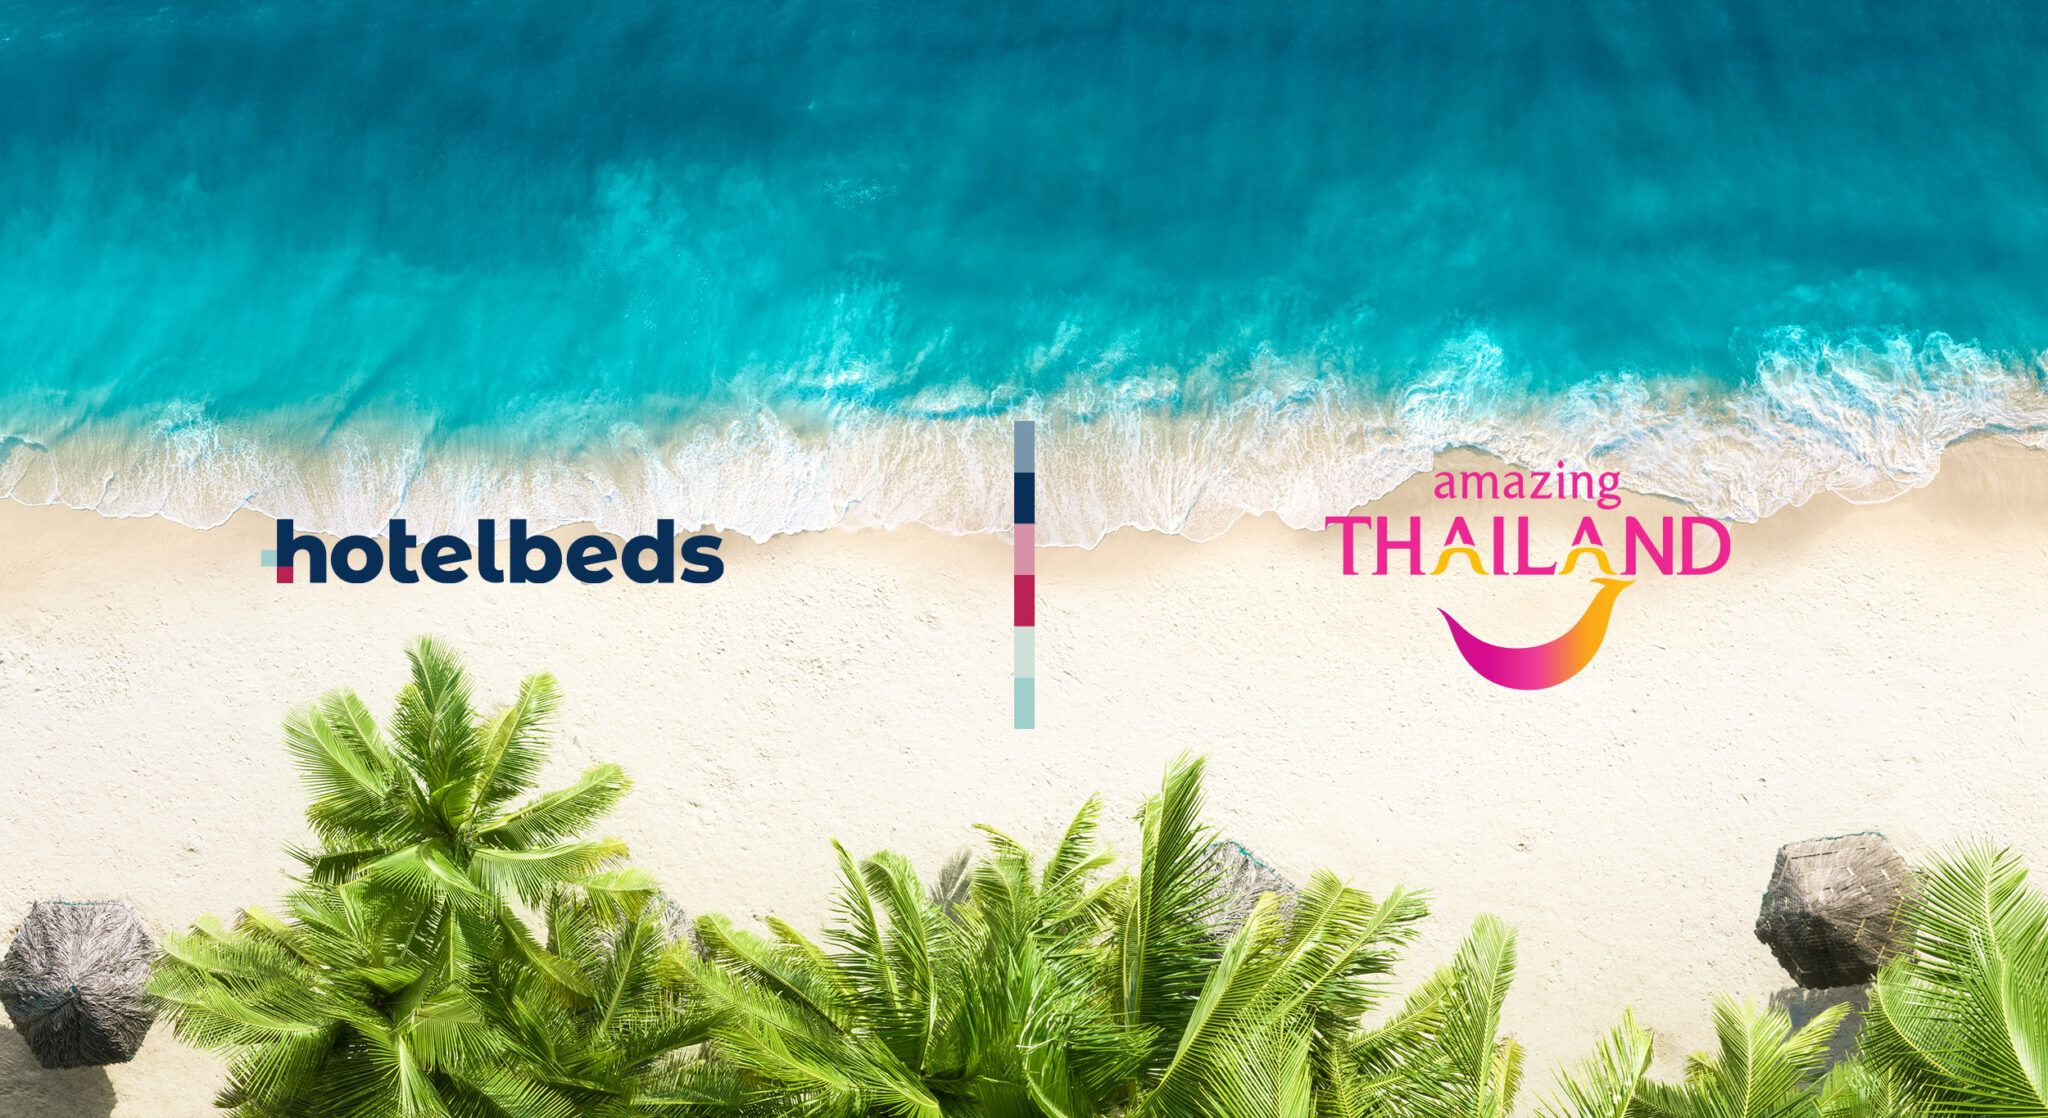 Hotelbeds s'associe à l'Autorité du tourisme de Thaïlande pour attirer les voyageurs américains